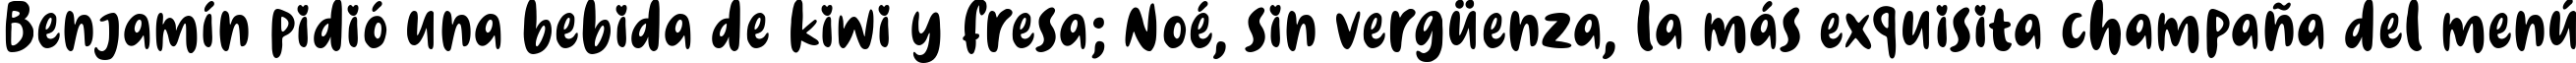 Пример написания шрифтом Dinomiko текста на испанском